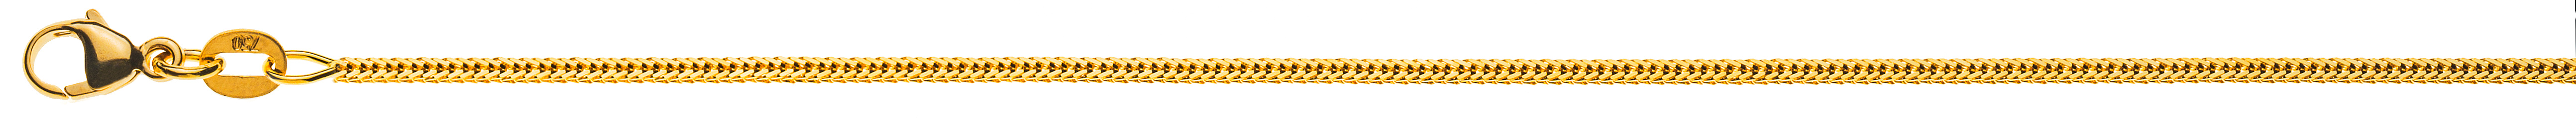 AURONOS Prestige Halskette Gelbgold 18K Fuchsschwanz diamantiert 38cm 1.2mm